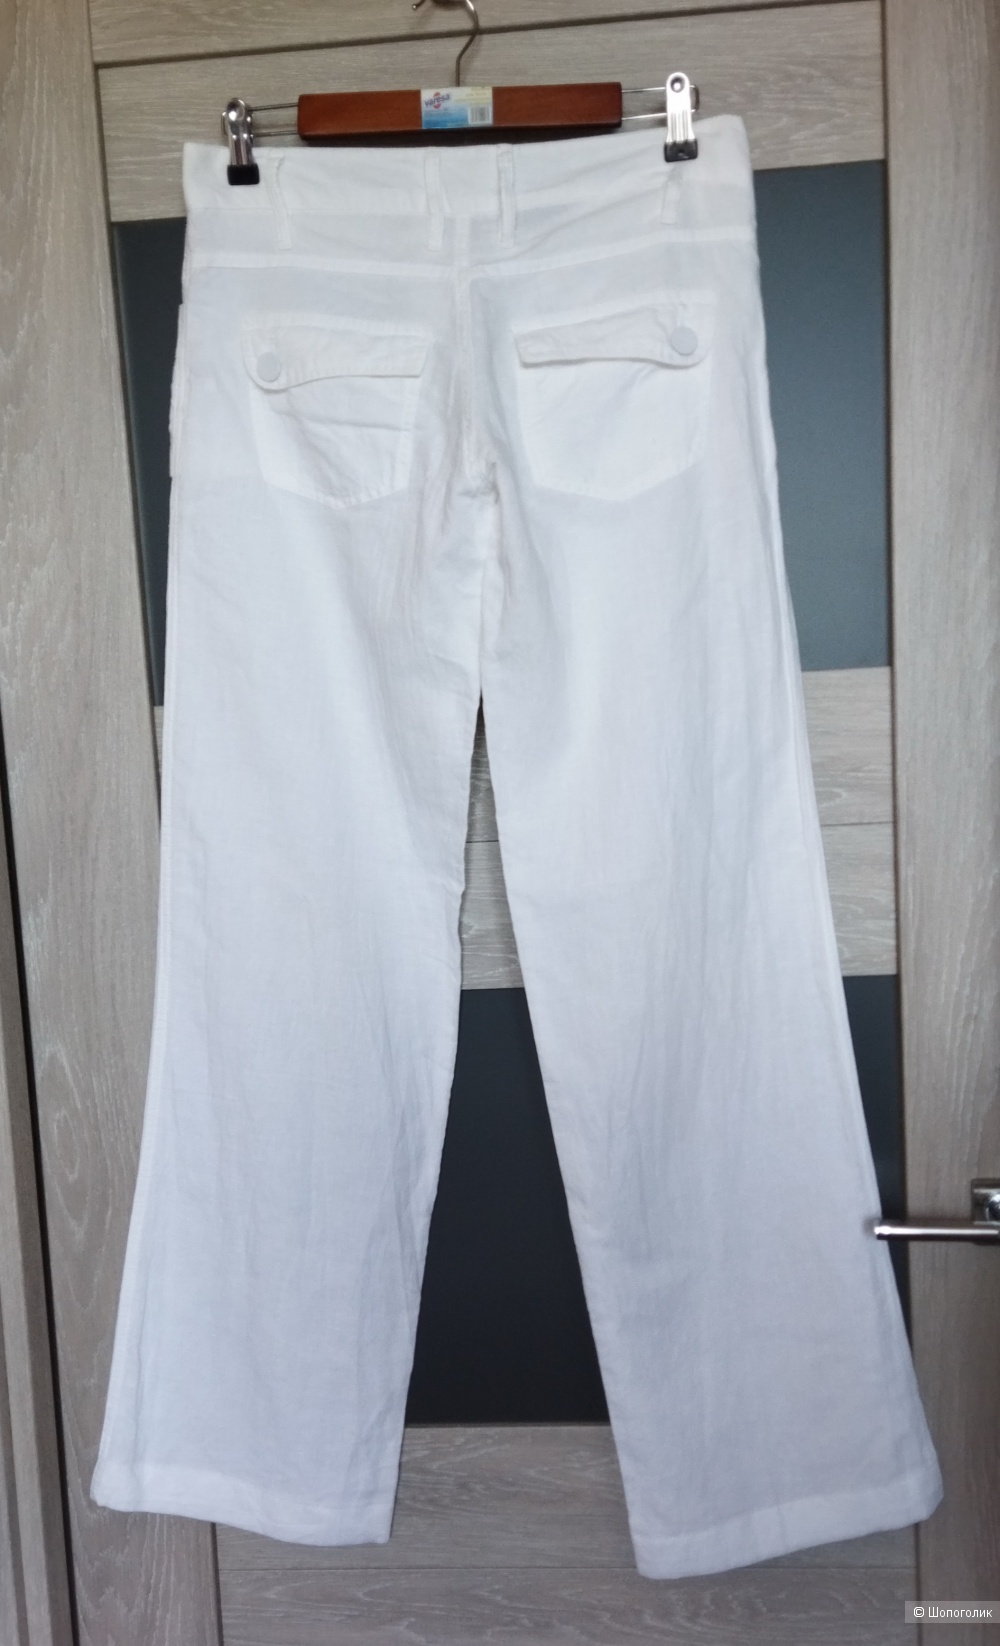 Льняные брюки Ichi, р.S-M (44-46)